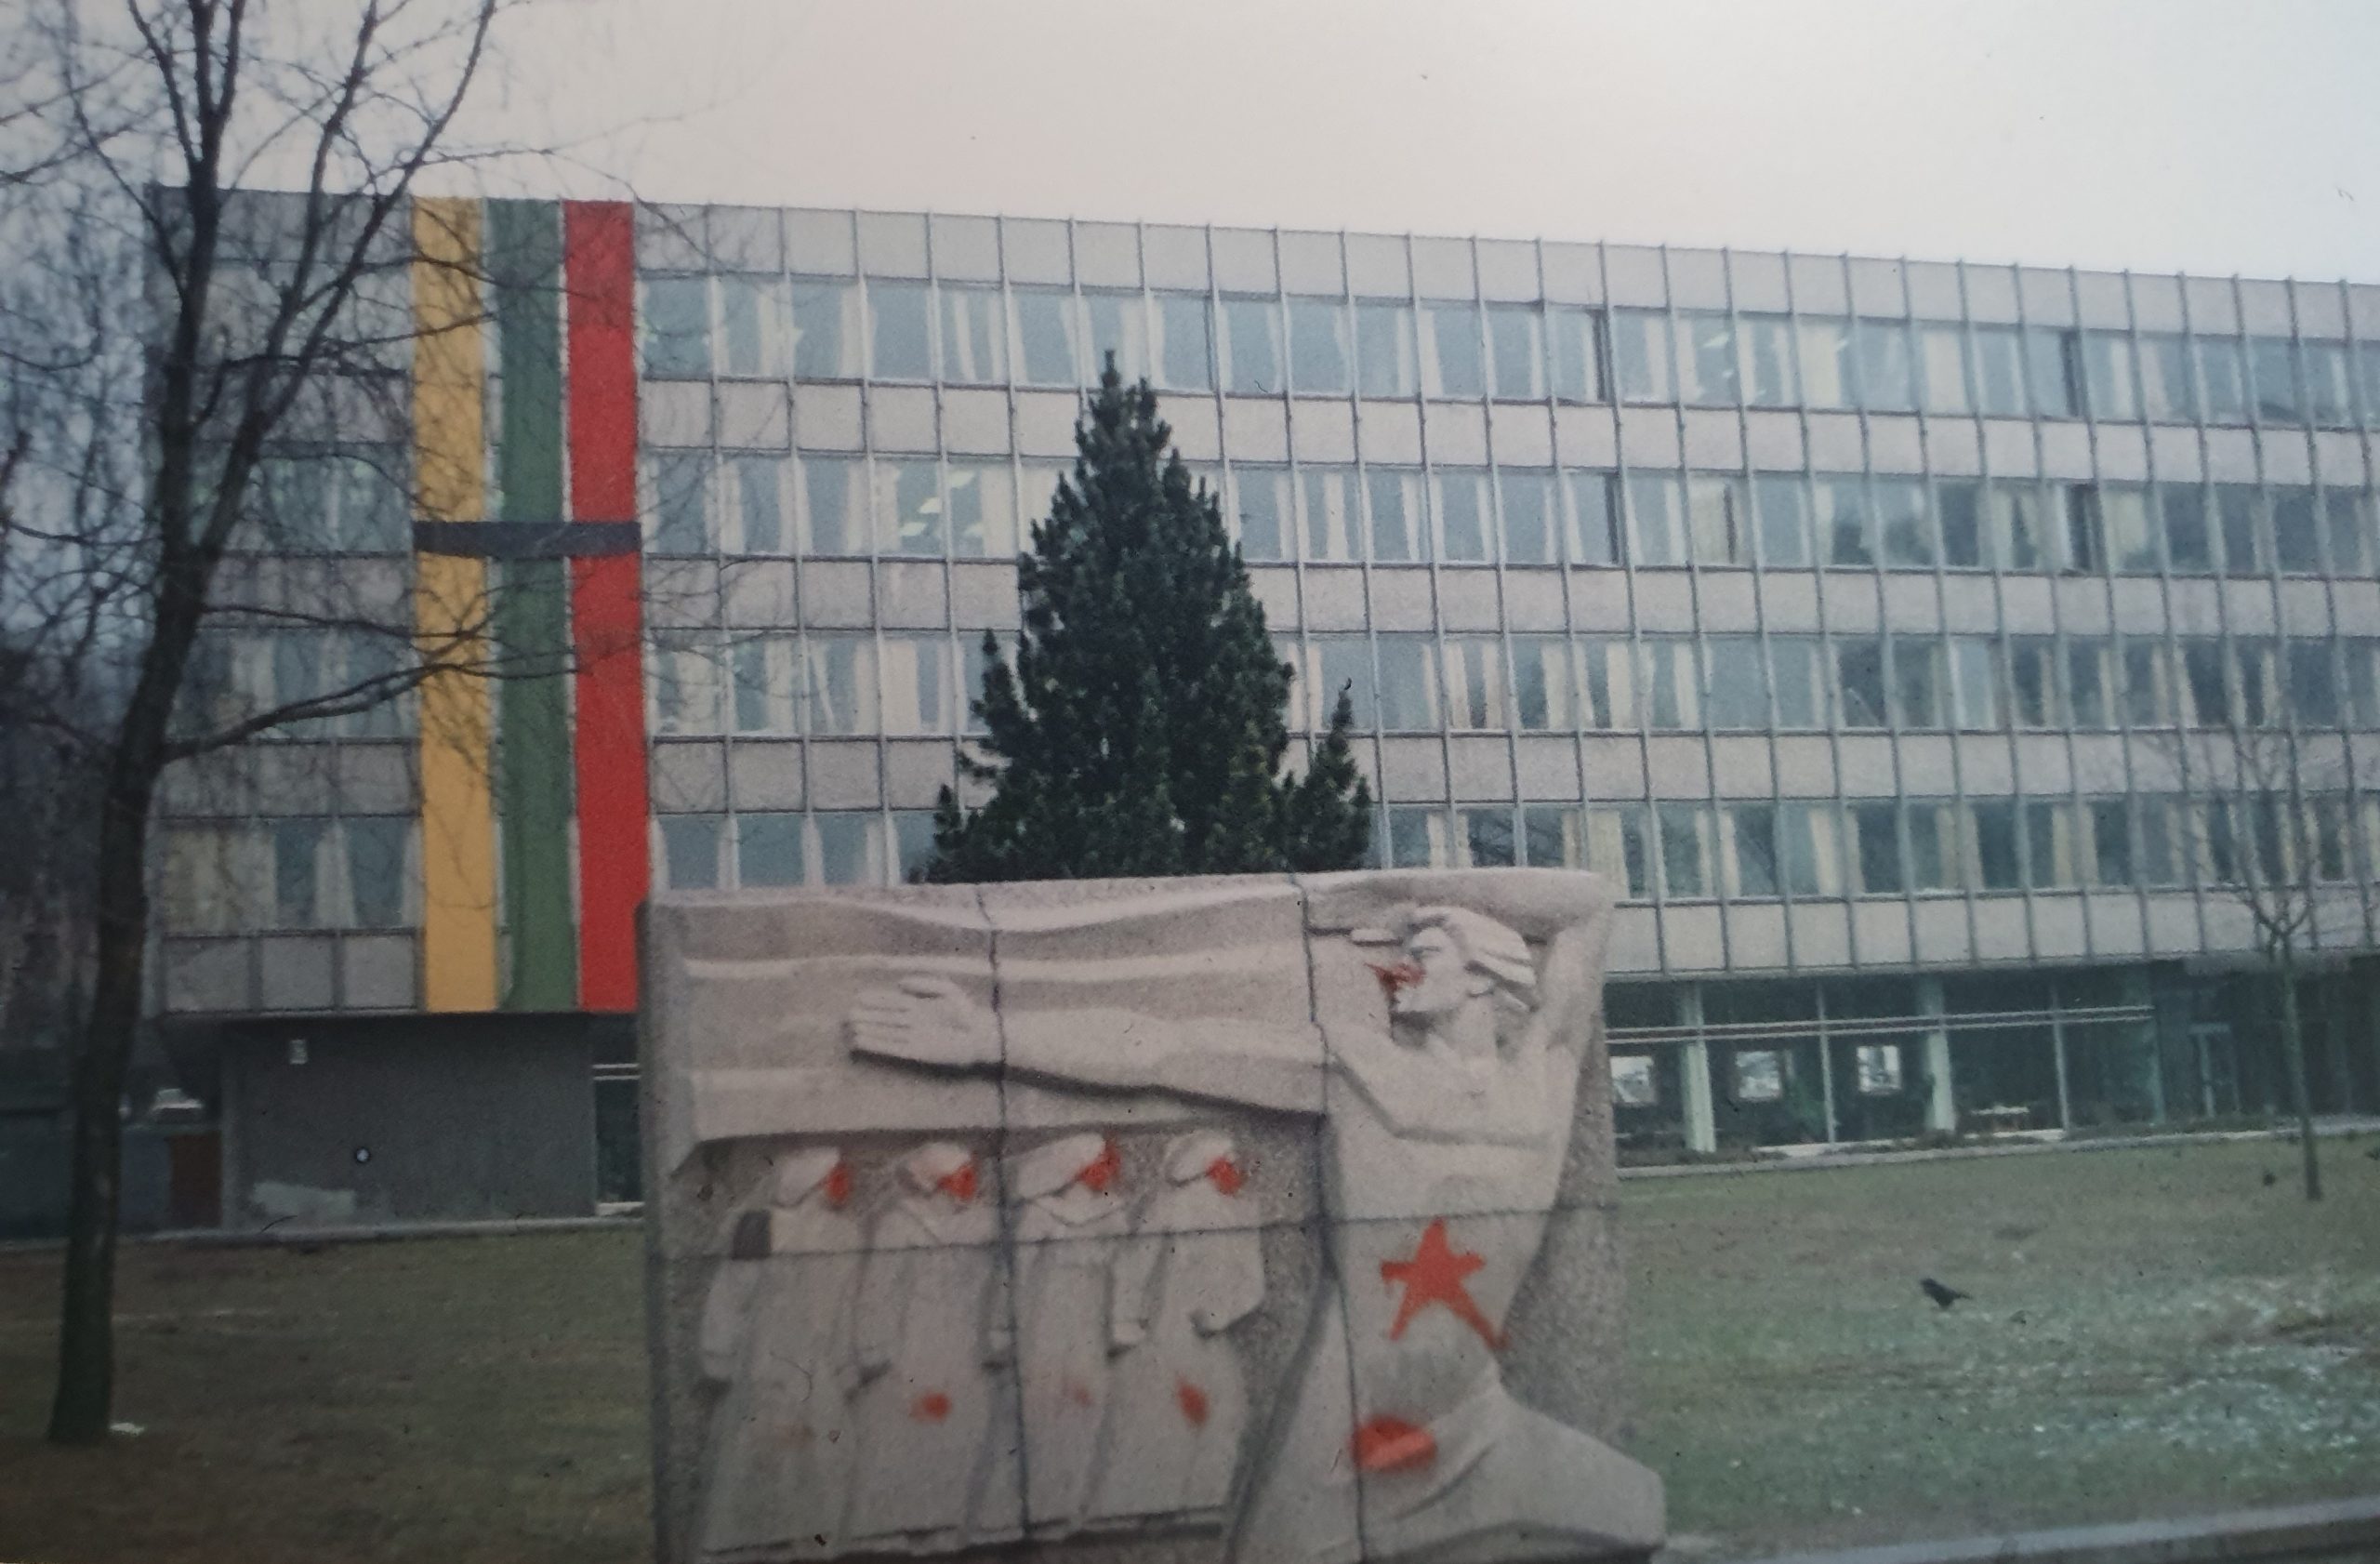 Gedulo juosta perjuosta trispalvė ant tuometinio „Miestprojekto“ pastato. Stela spontaniškai apterliota raudonomis žvaigždėmis, simbolizuojančiomis sovietinę sistemą ir sovietinę kariuomenę.